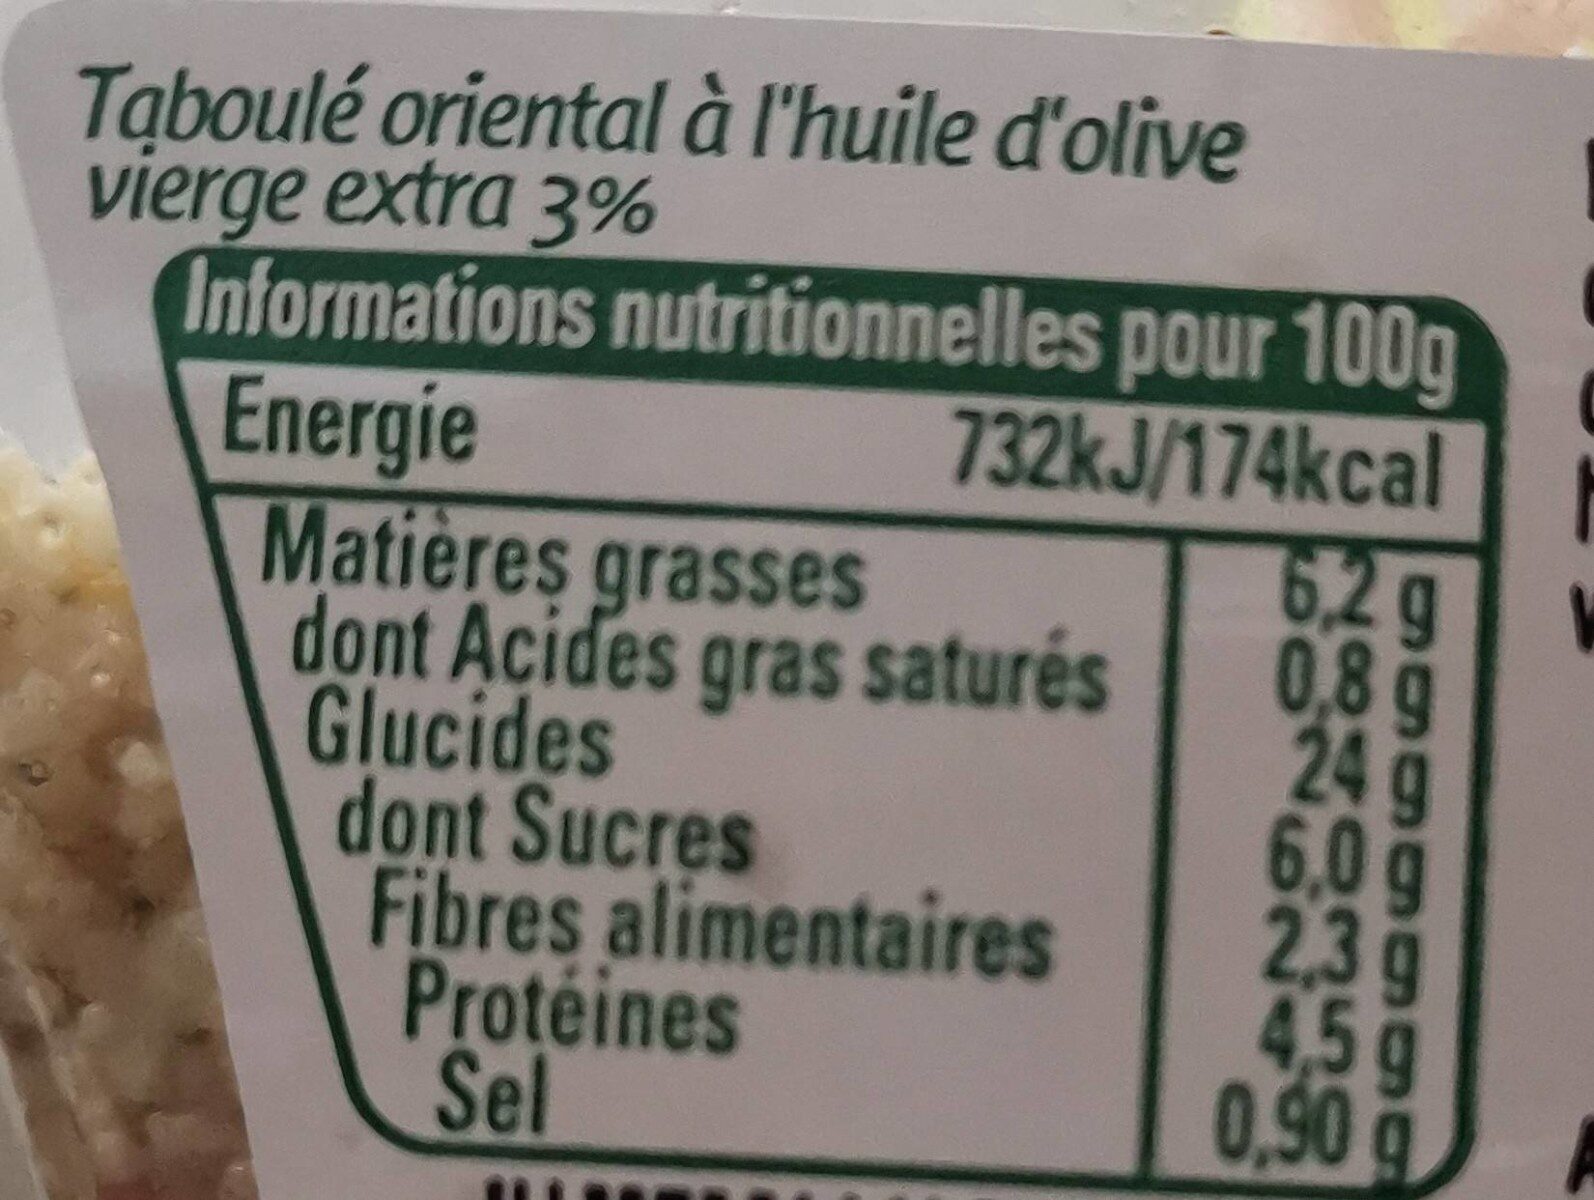 Mon Taboulé Oriental - Tableau nutritionnel